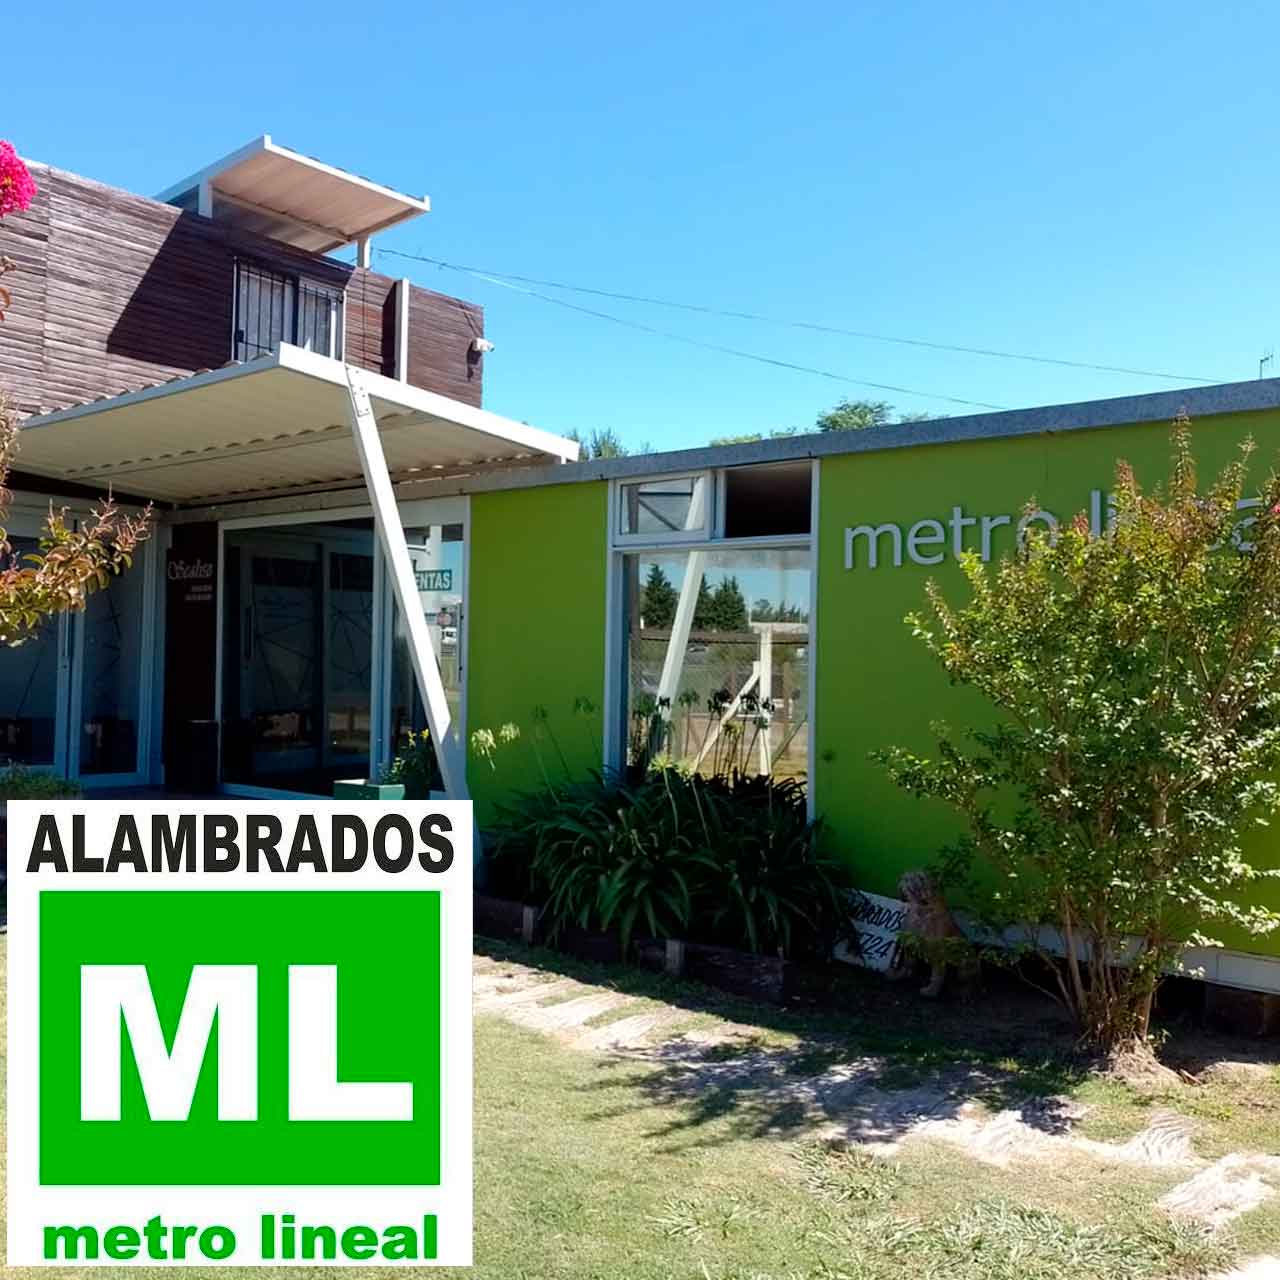 Alambrados Metro Lineal